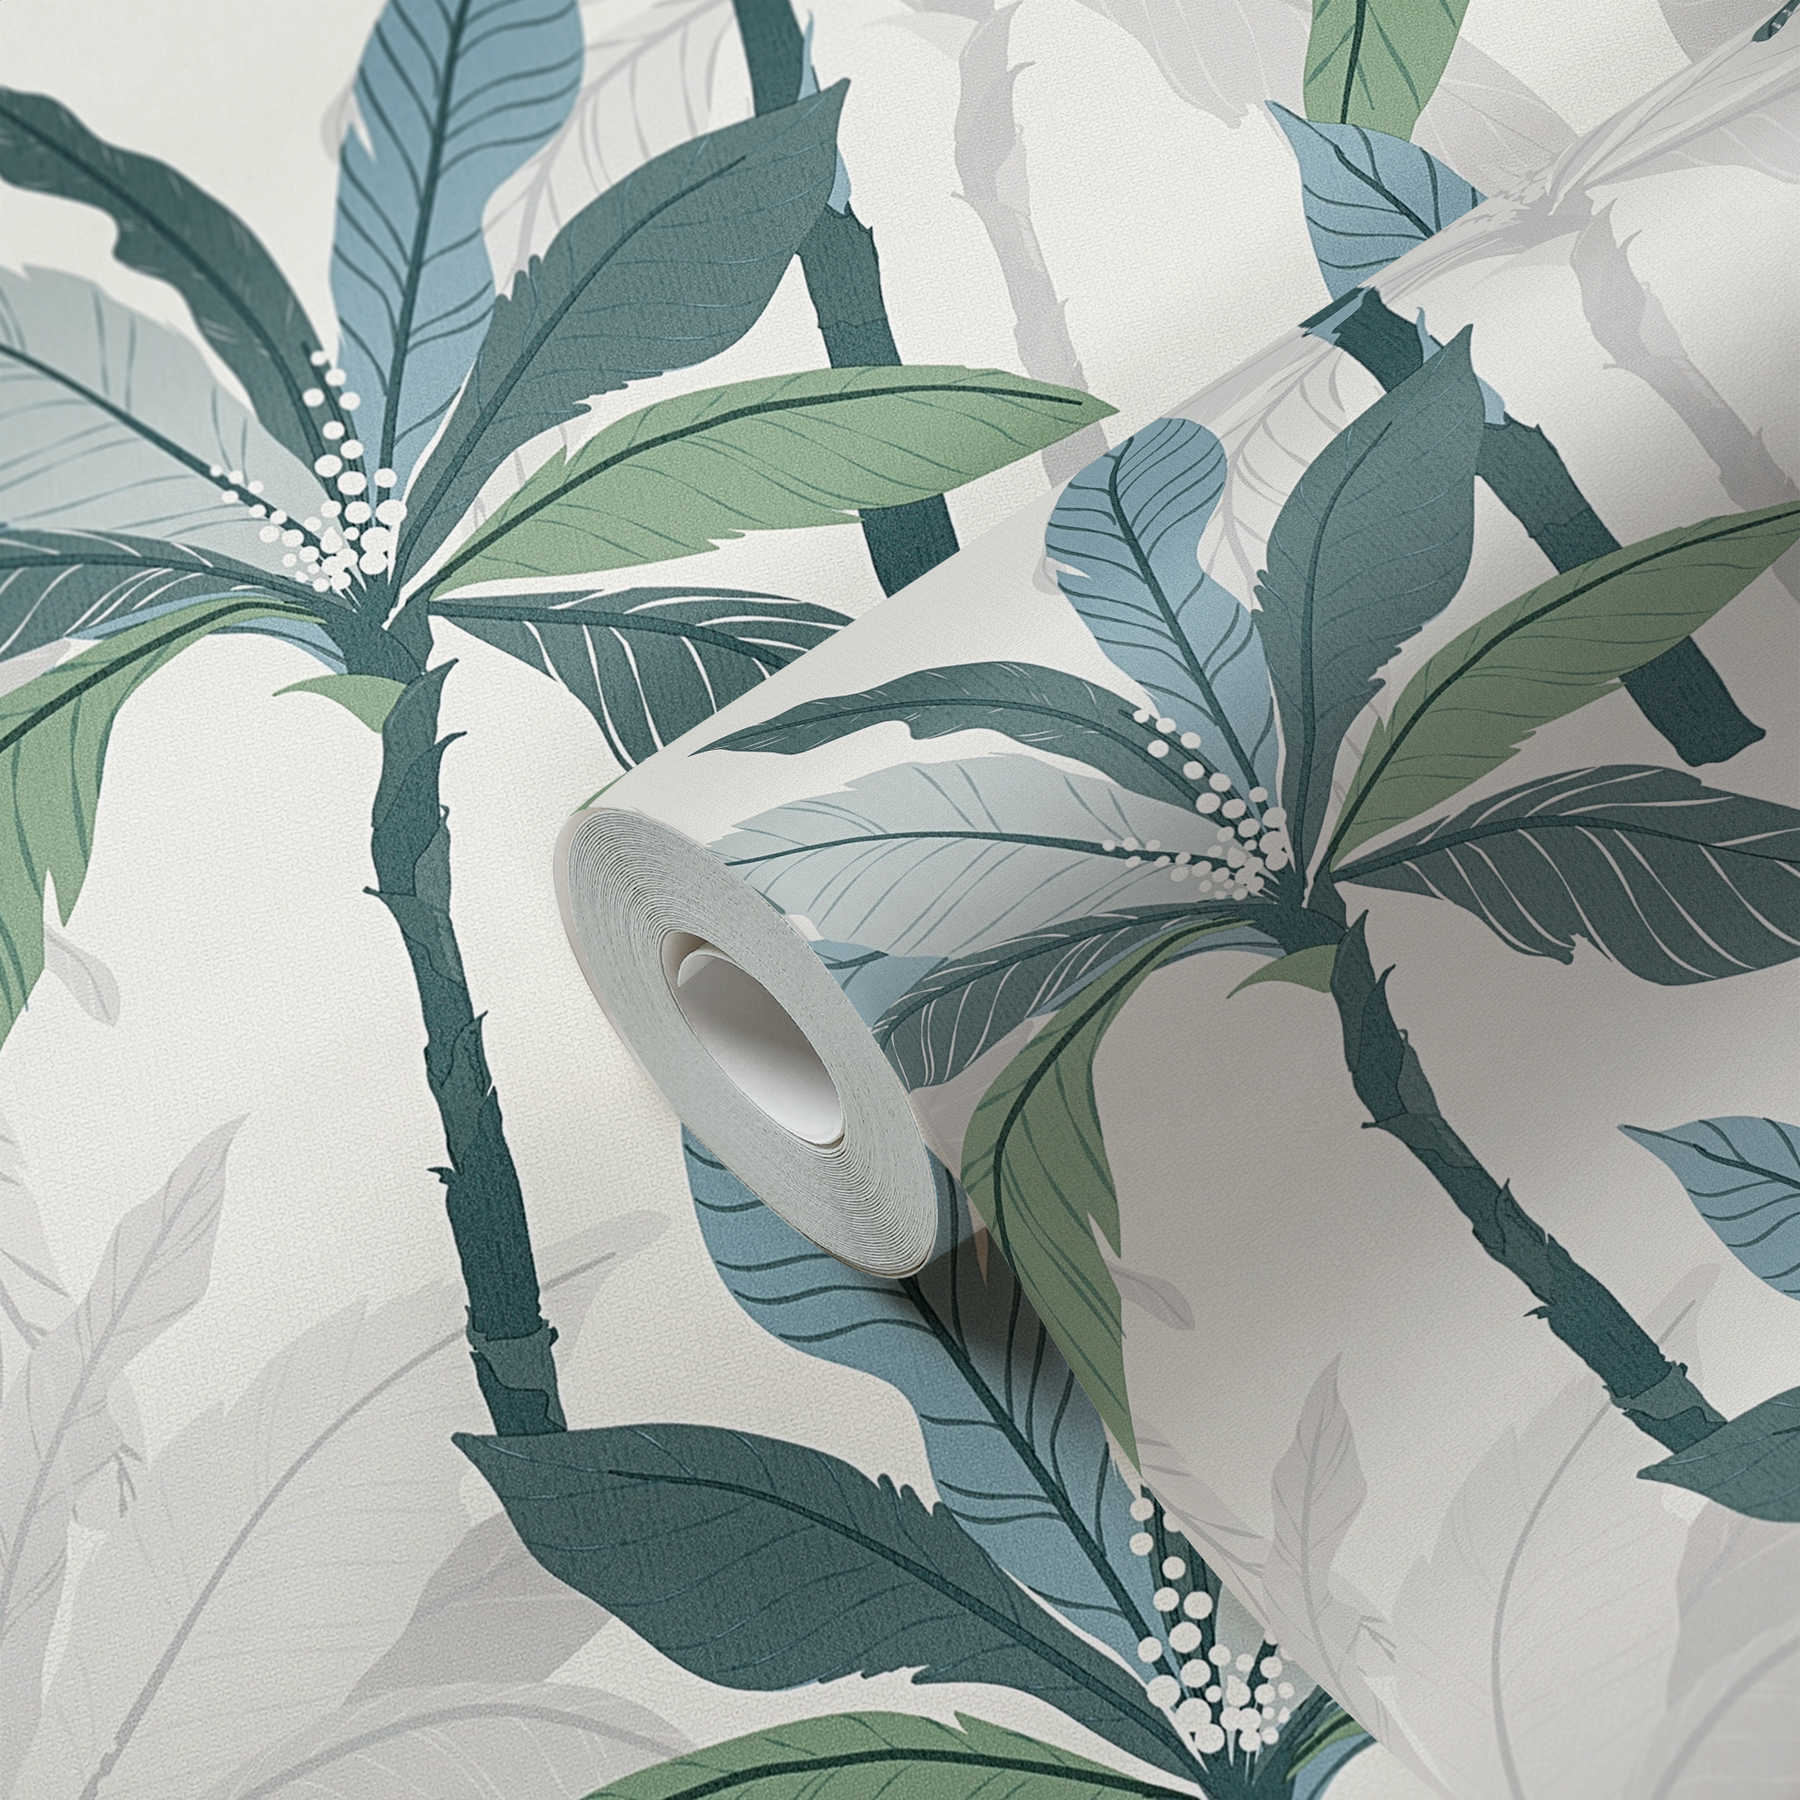             Papier peint tropical avec design de palmiers - bleu, vert, blanc
        